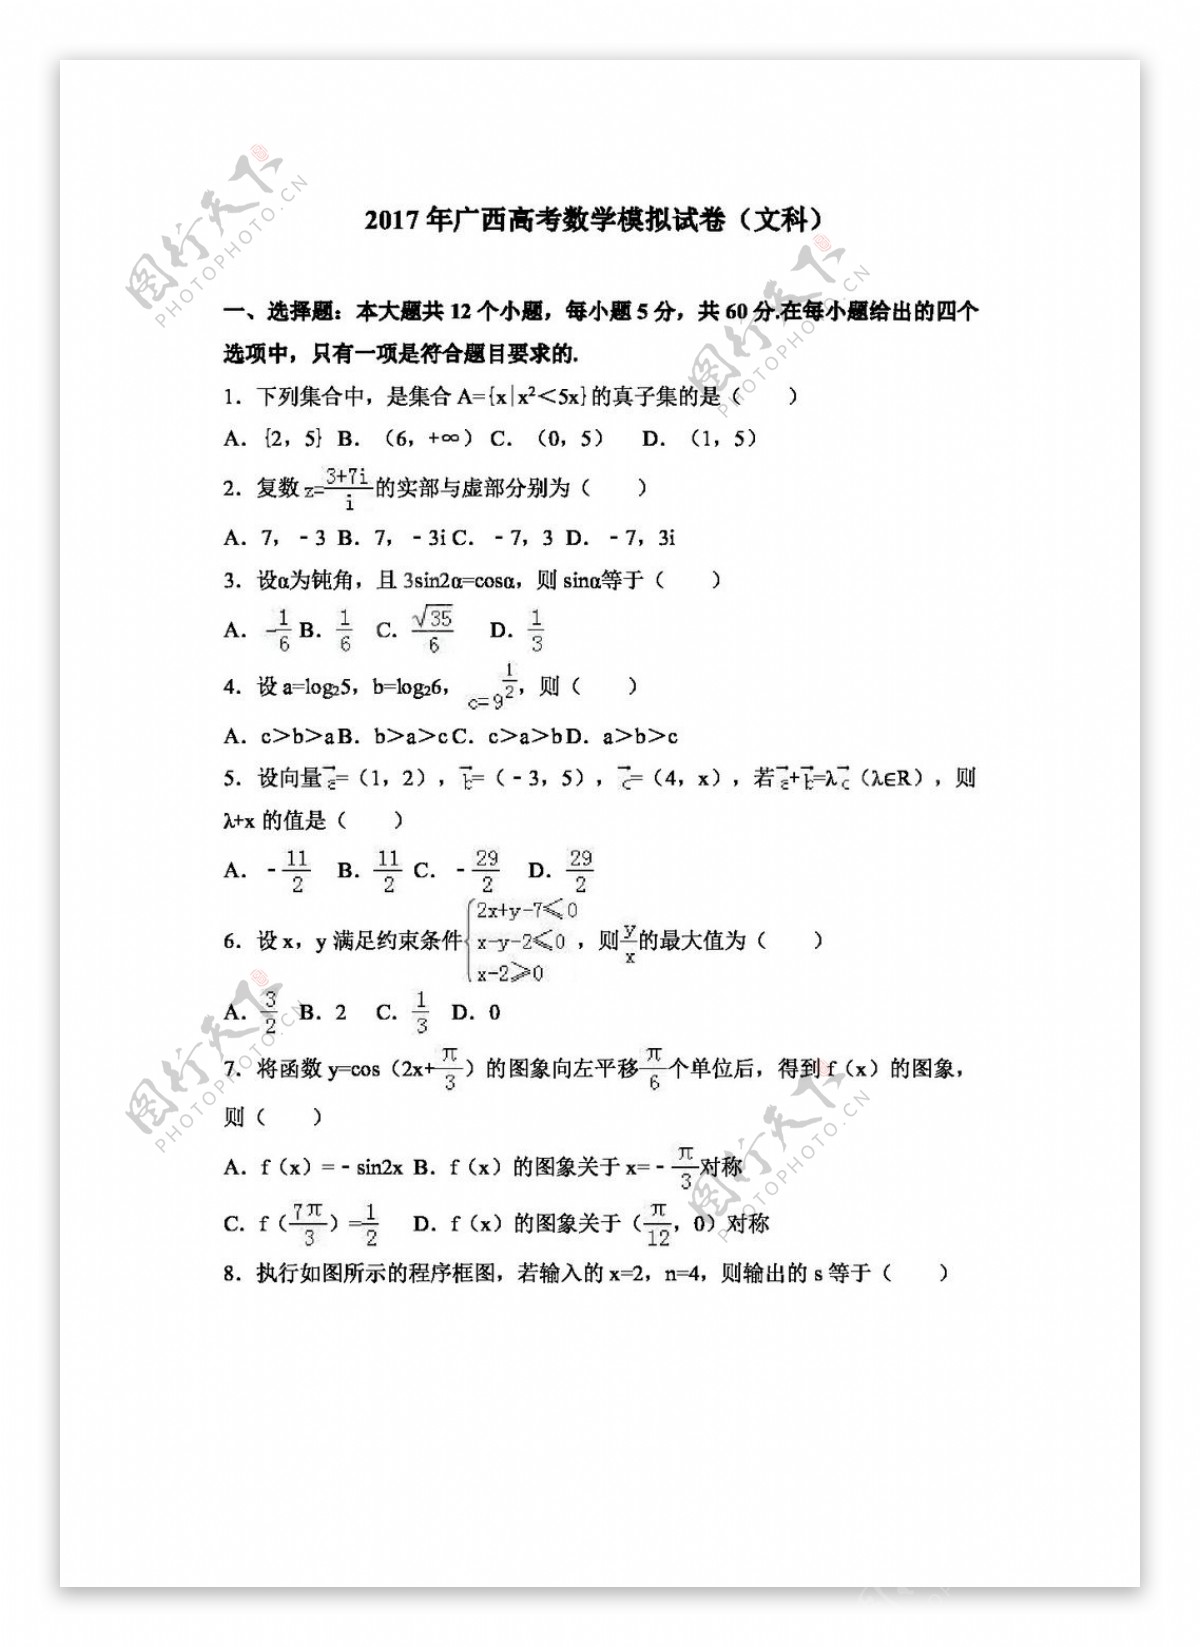 数学人教版2017年广西高考数学模拟试卷文科